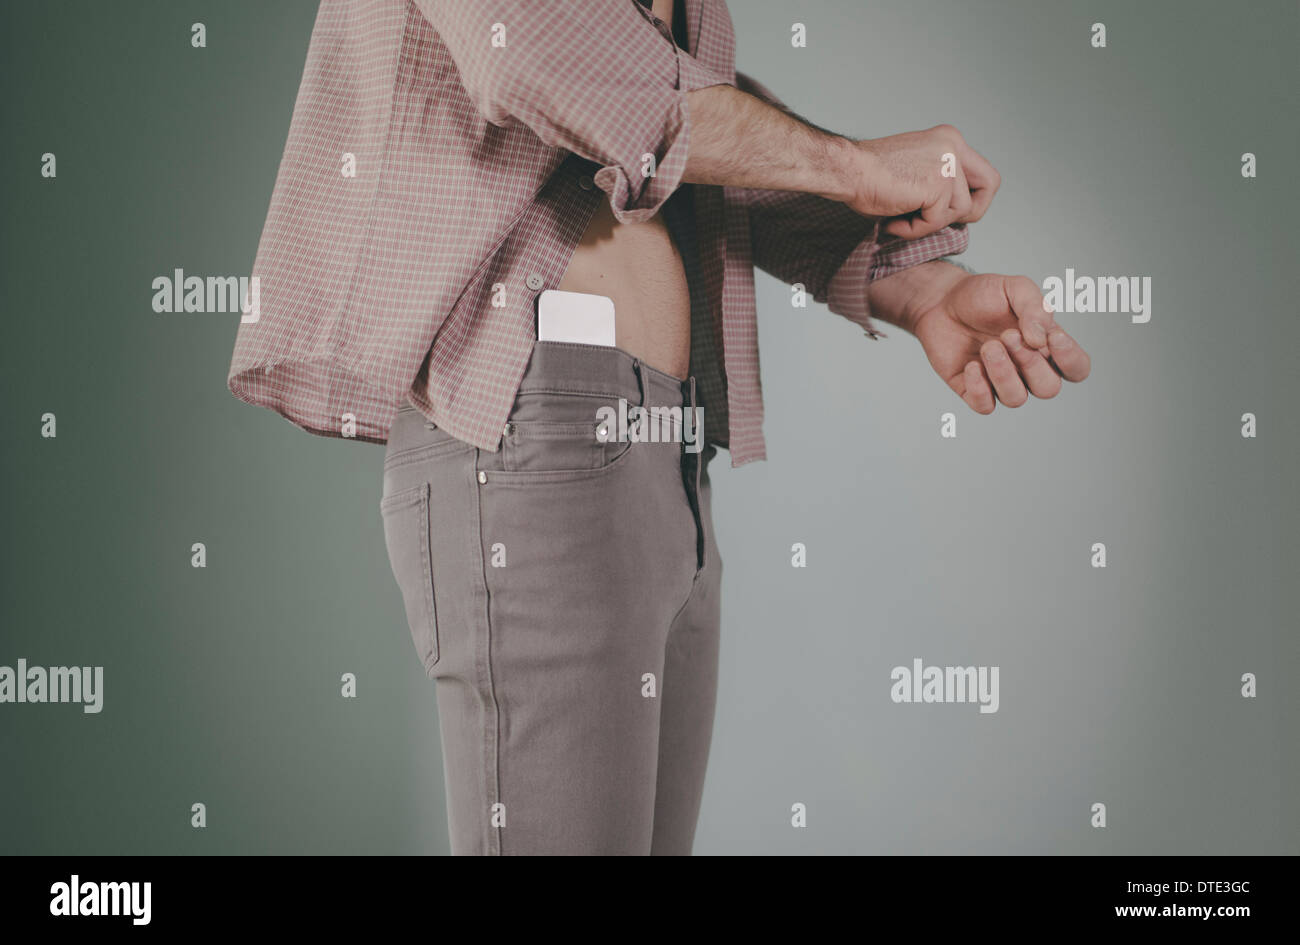 Partie d'une série montrant différentes façons on est porteur d'un smartphone, nichée dans la taille des jeans serrés. Banque D'Images